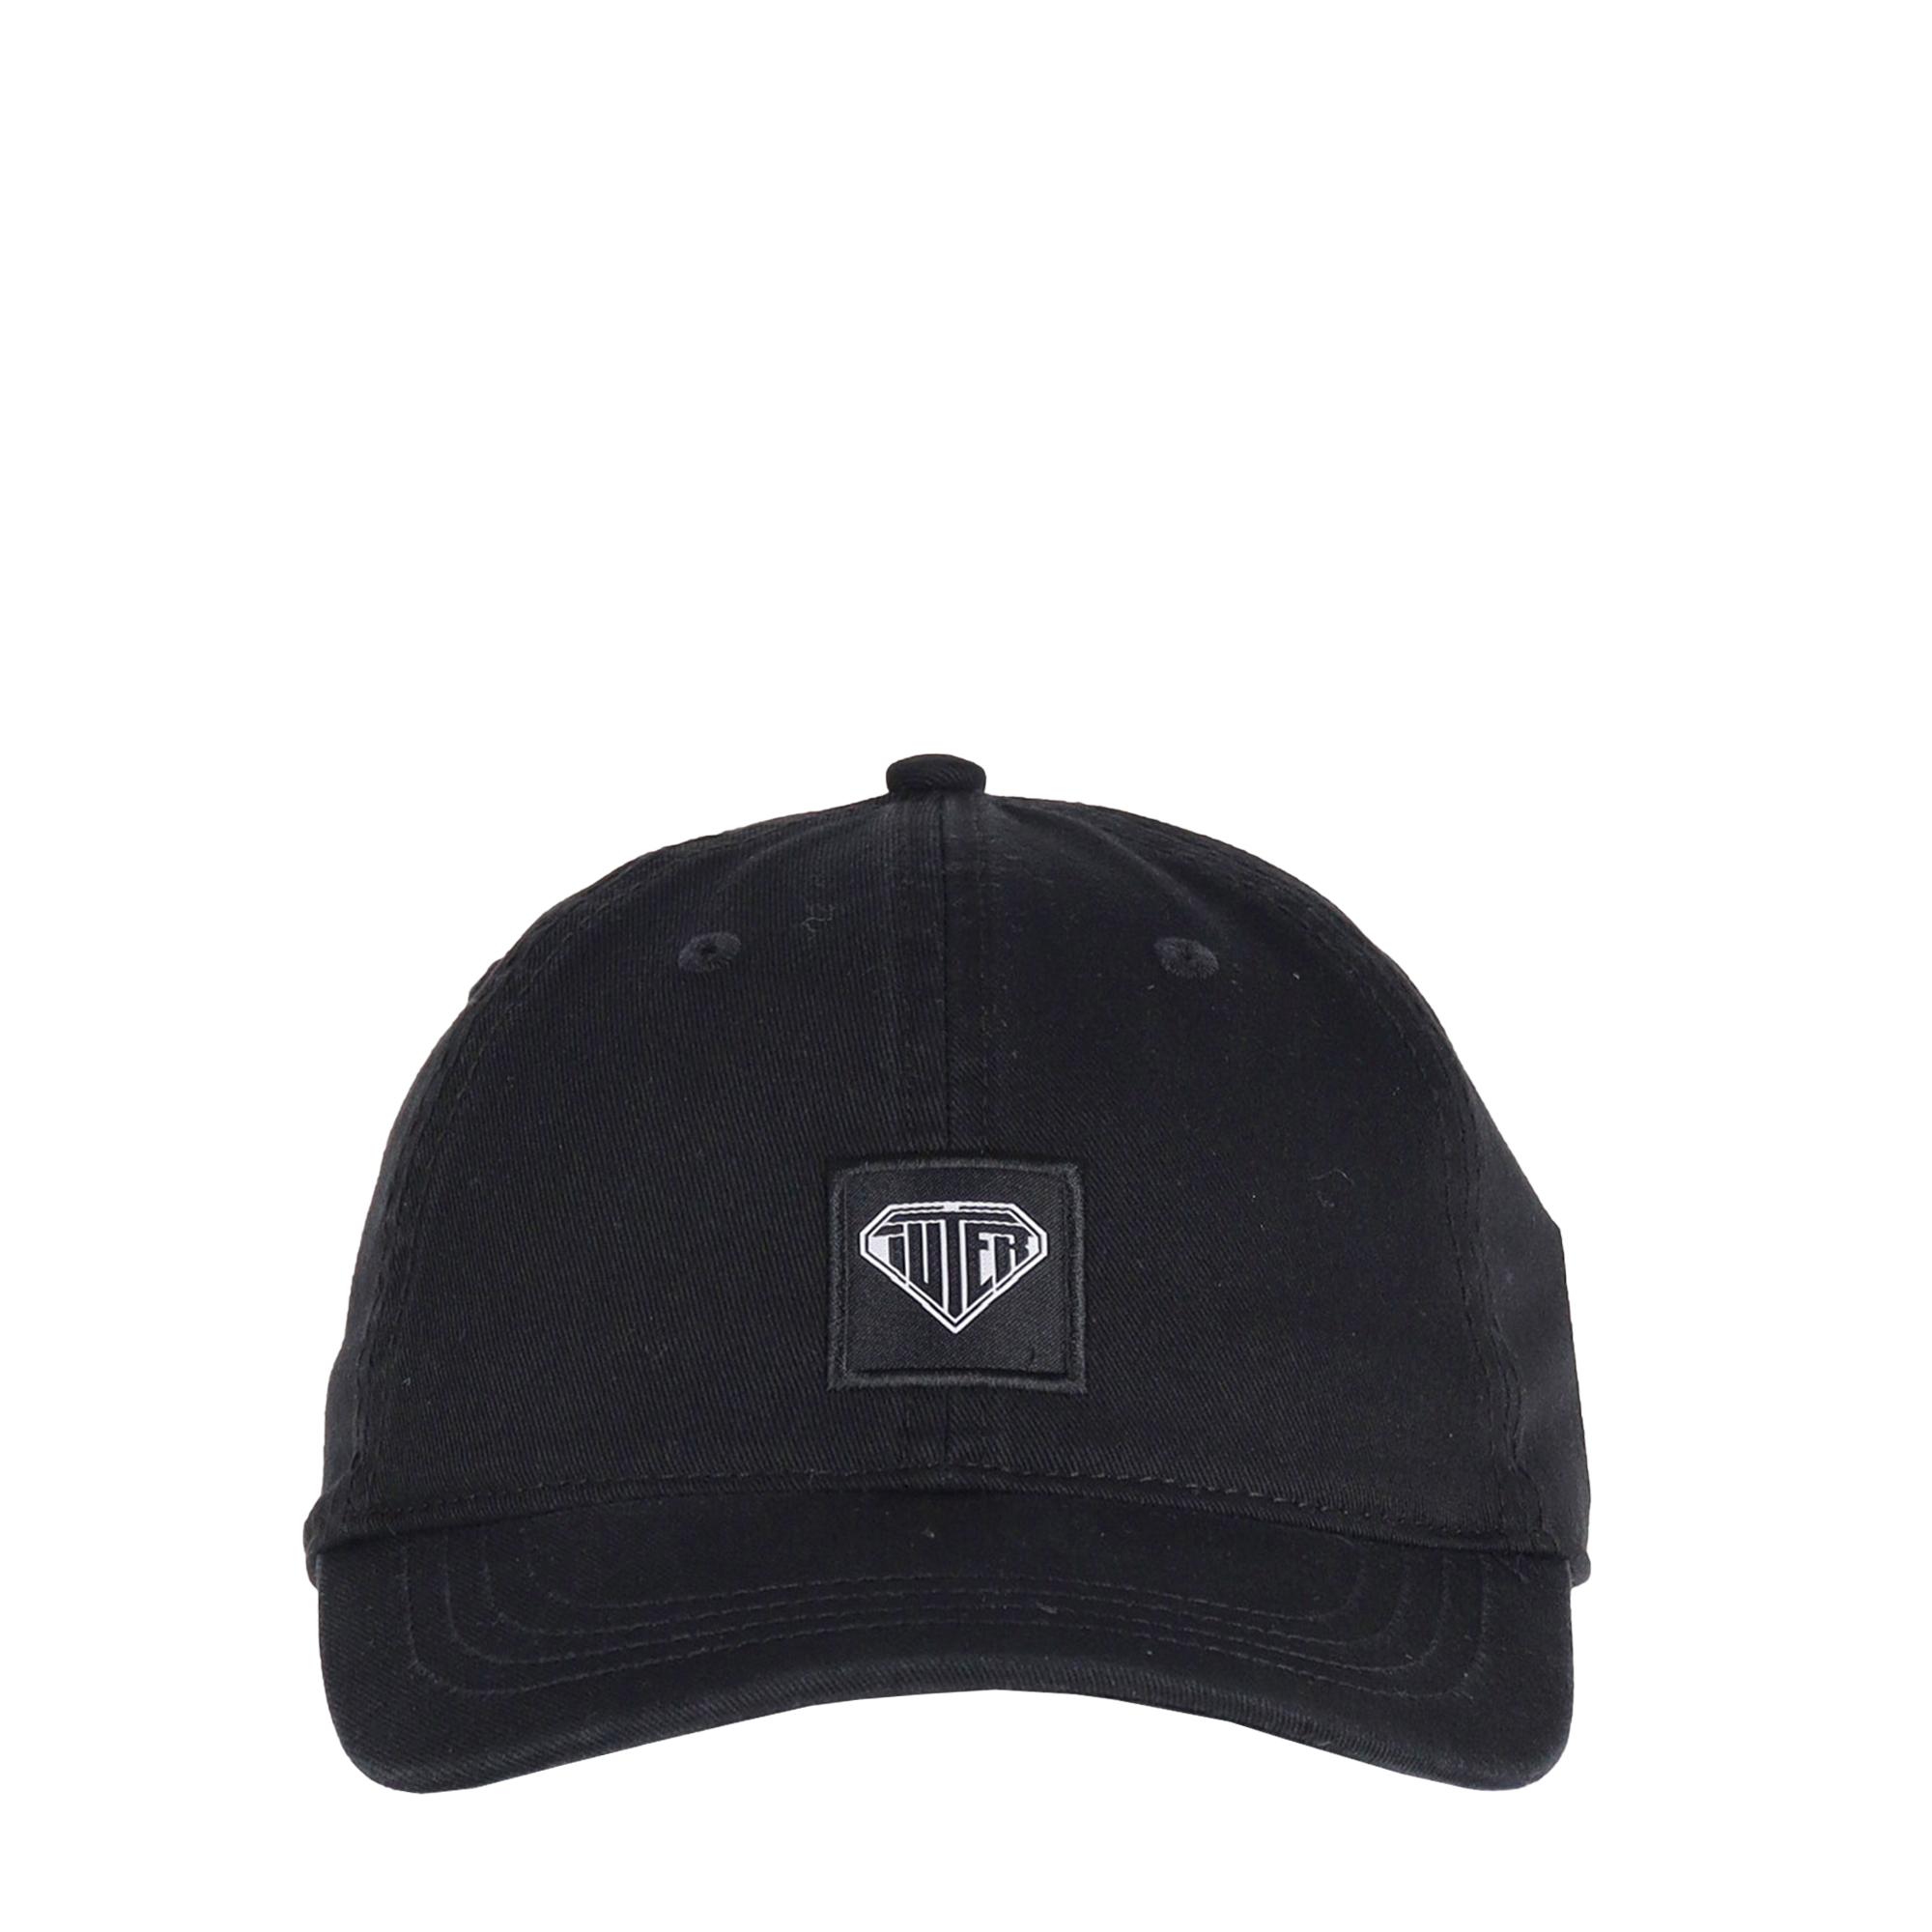 Iutef Logo Dad Hat BLACK 